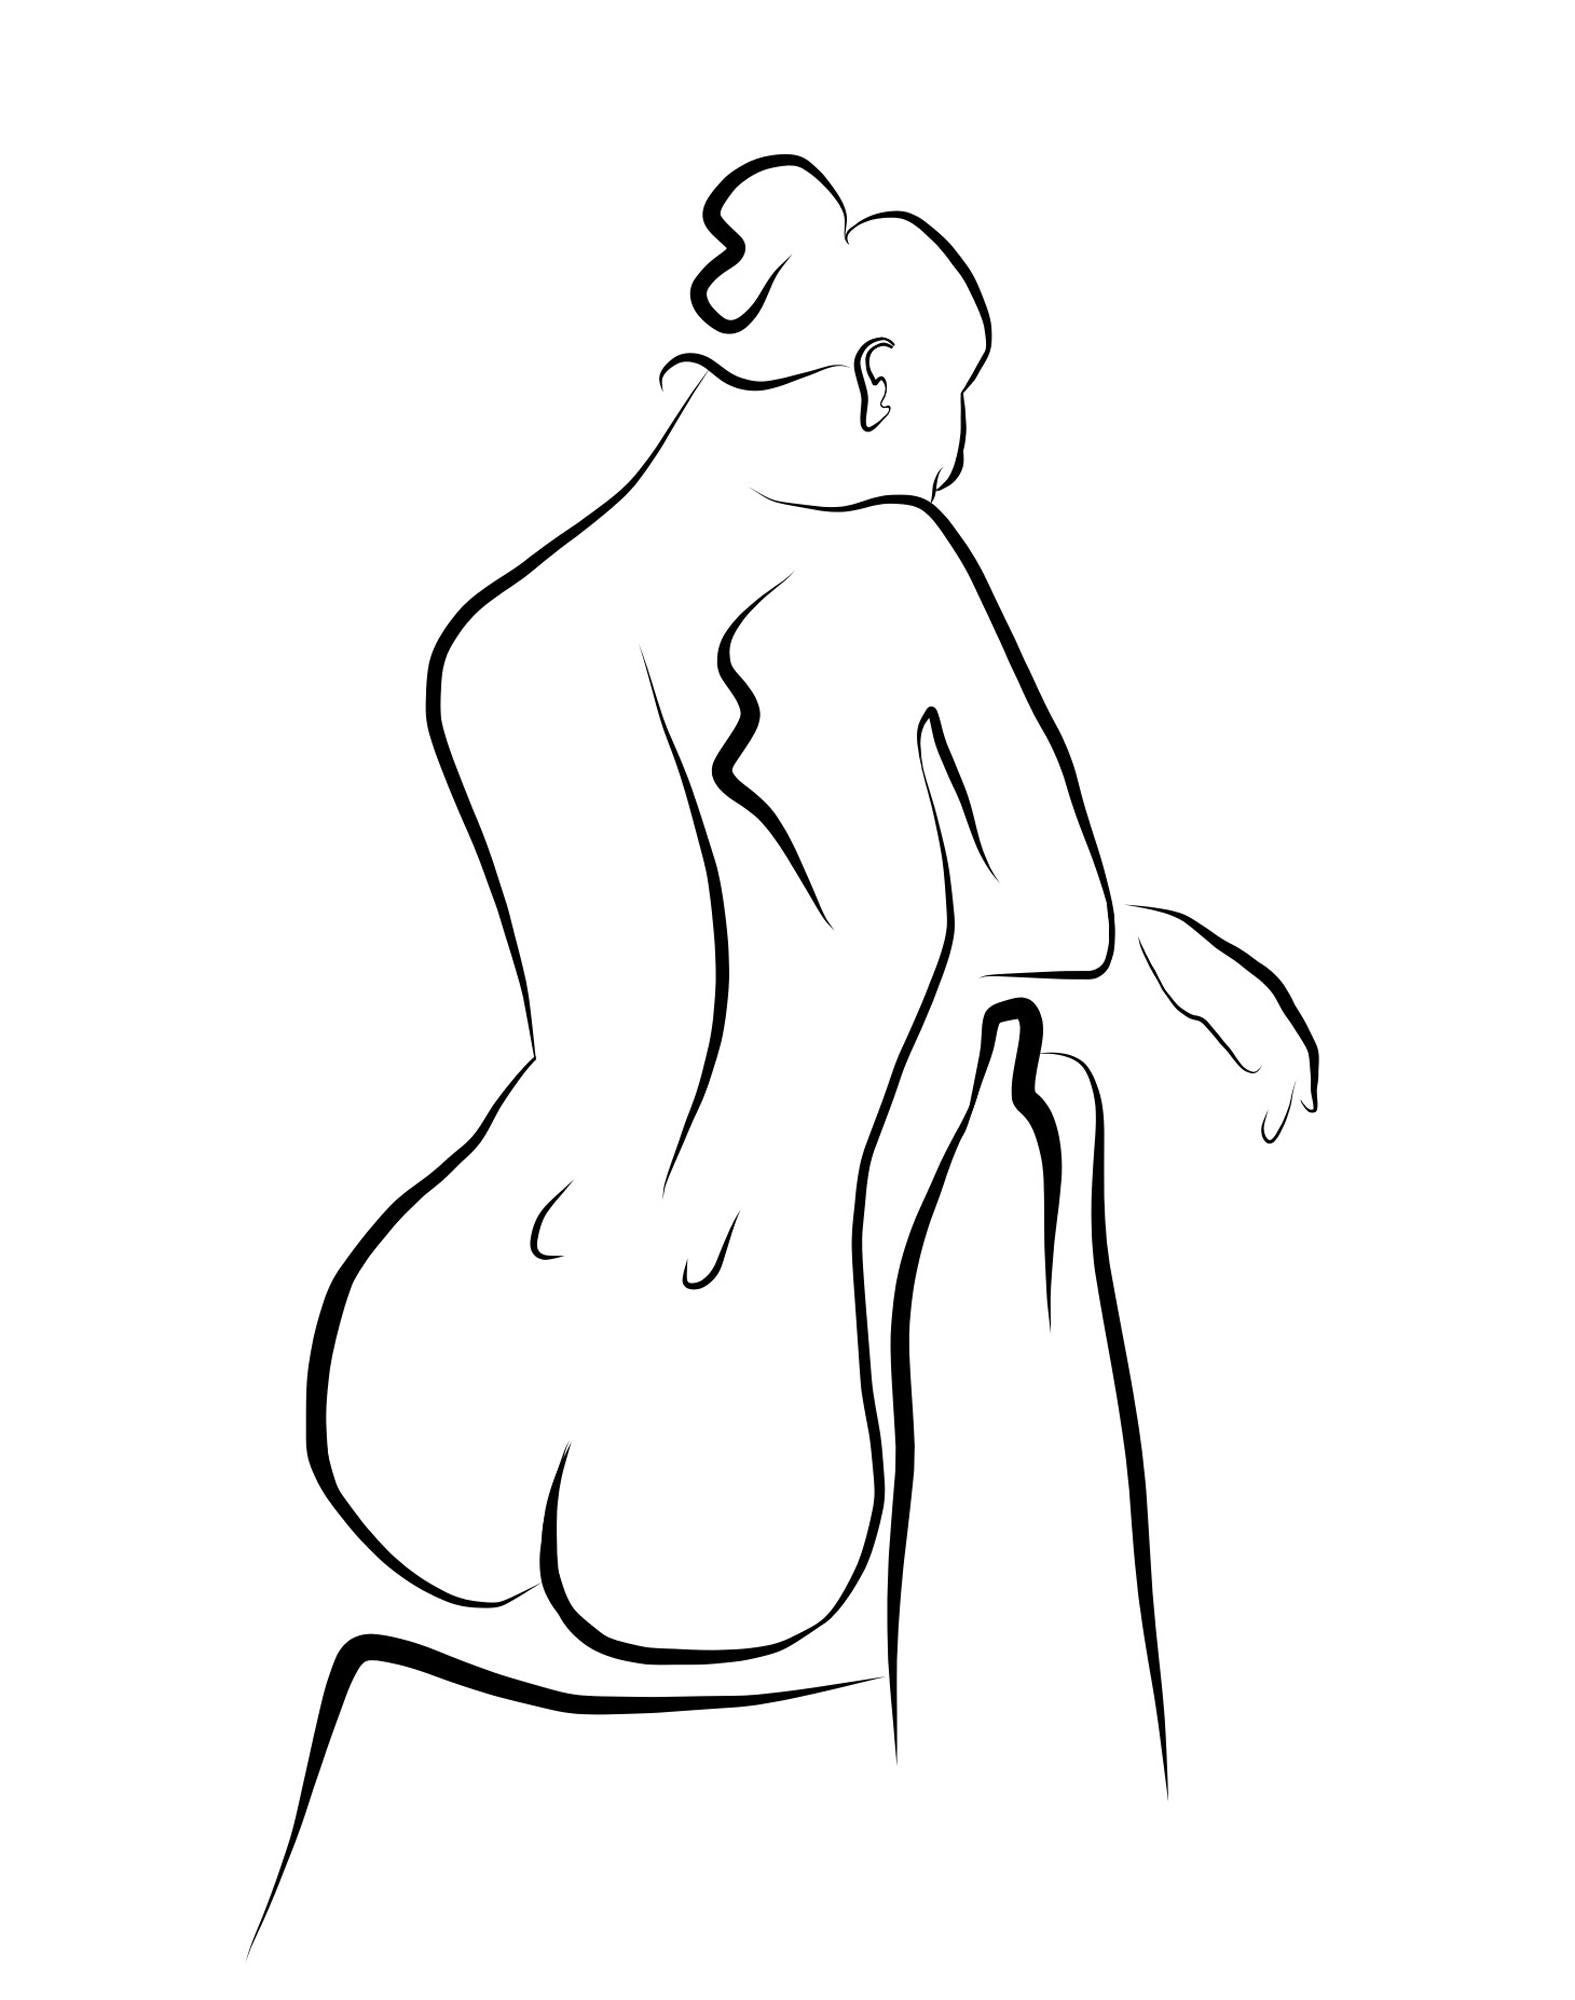 Haiku n°57, 1/50 - Dessin numérique d'un nu féminin assis , nu à l'arrière